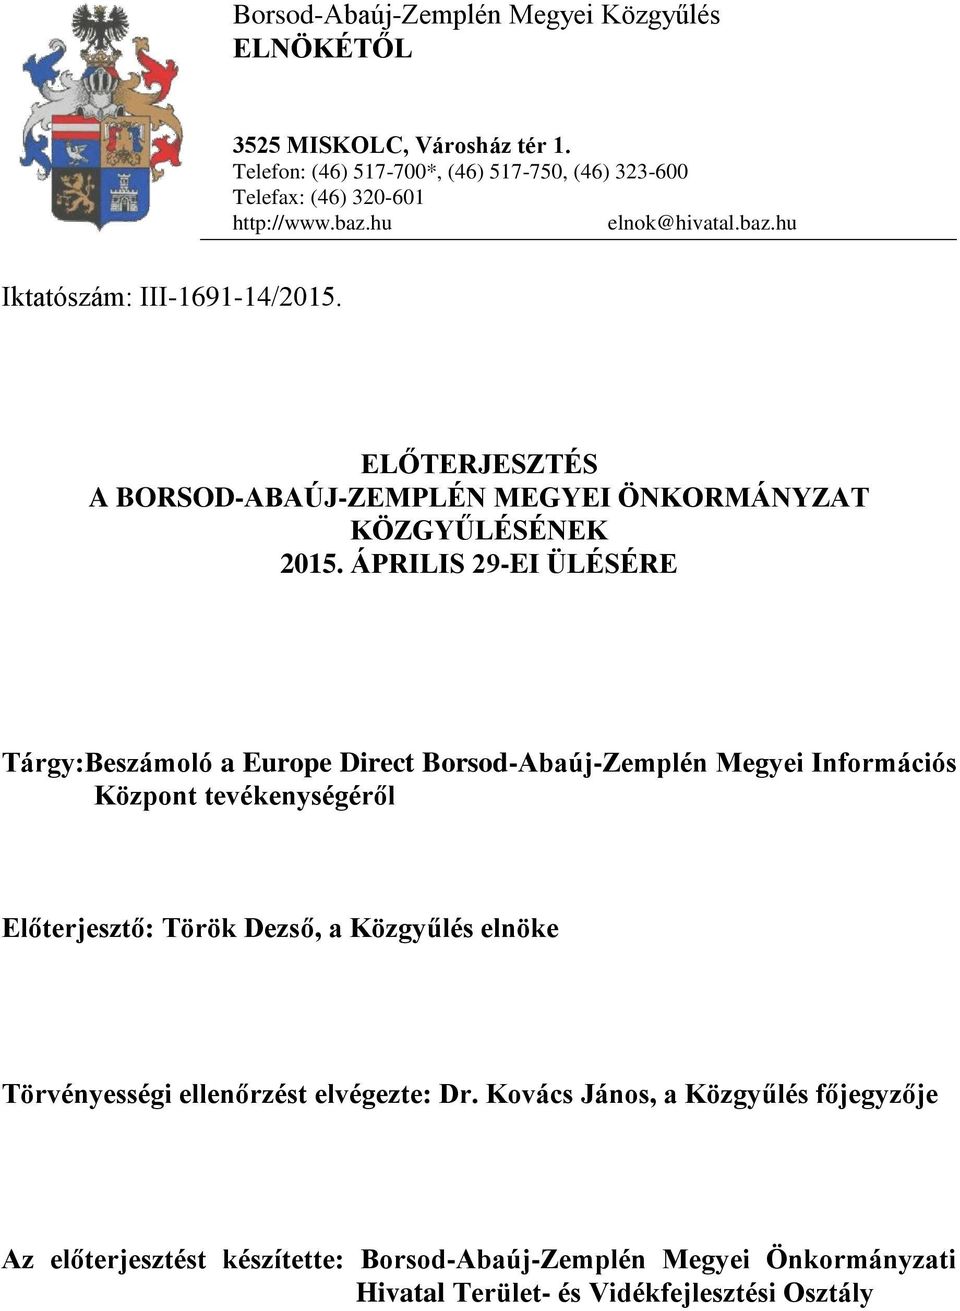 ÁPRILIS 29-EI ÜLÉSÉRE Tárgy:Beszámoló a Europe Direct Borsod-Abaúj-Zemplén Megyei Információs Központ tevékenységéről Előterjesztő: Török Dezső, a Közgyűlés elnöke